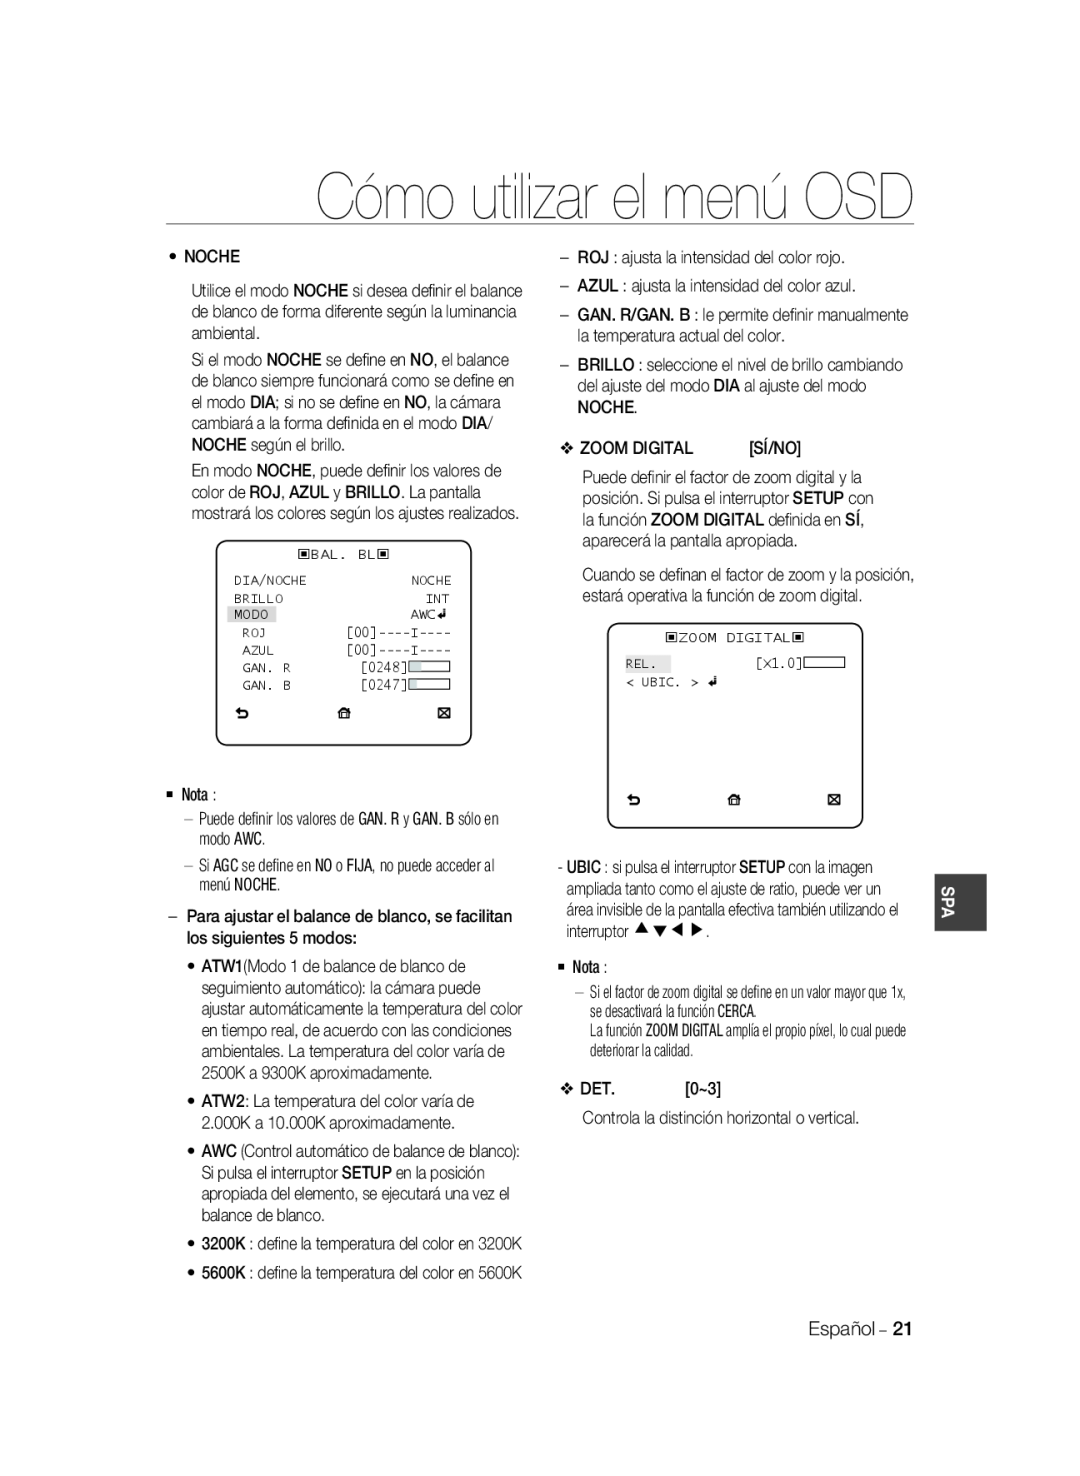 Samsung SCC-B2037P, SCC-B2337P manual Cómo utilizar el menú OSD, 3200K deﬁne la temperatura del color en 3200K 